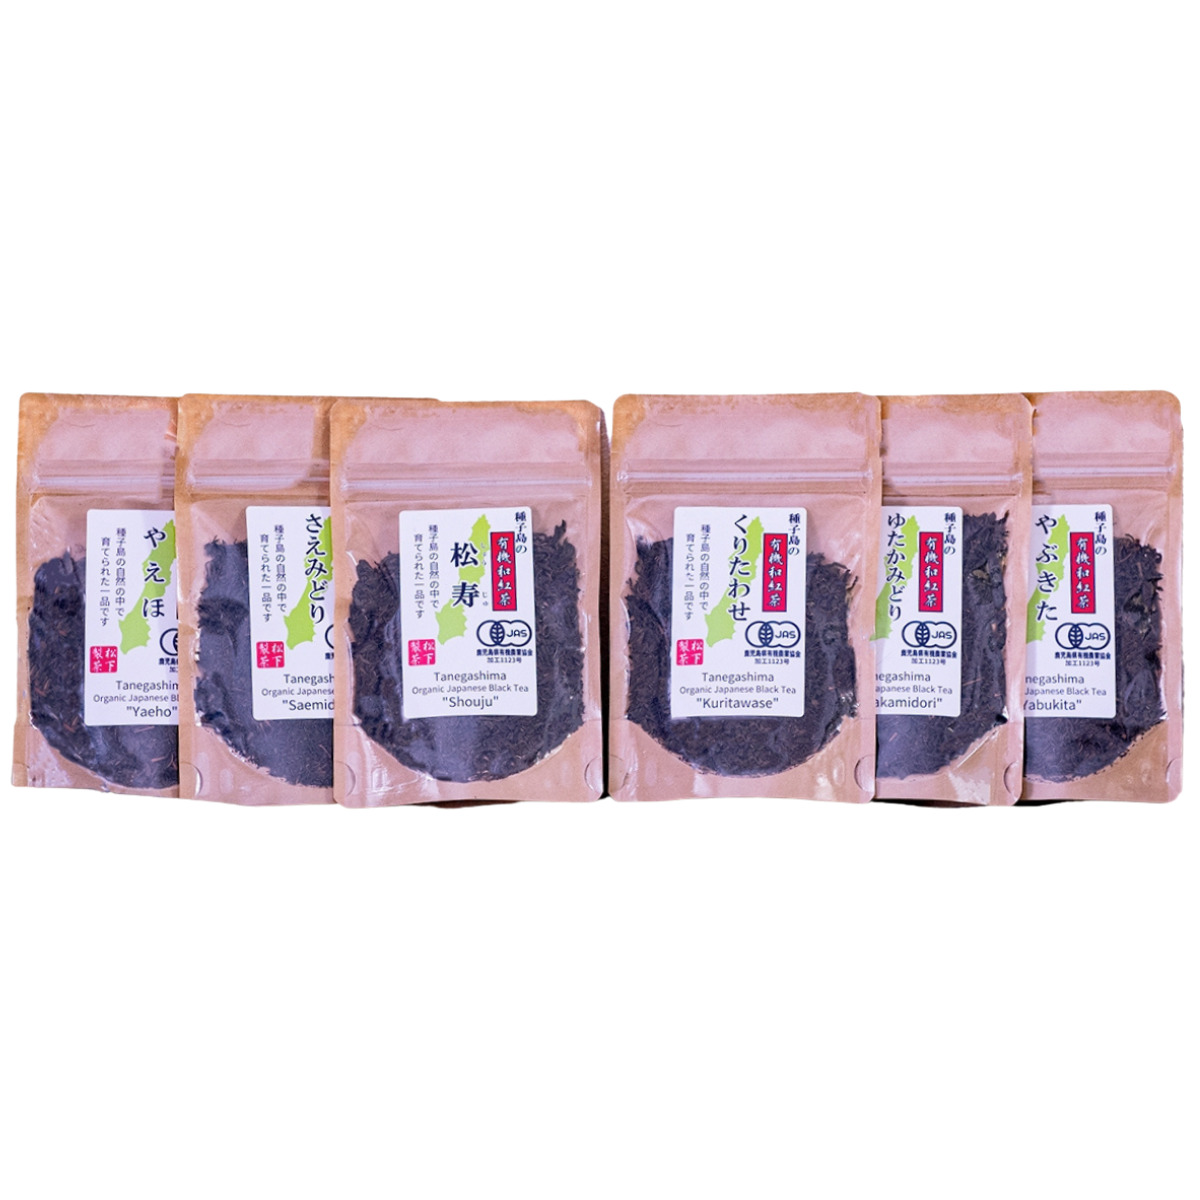 種子島の有機和紅茶 飲み比べセット 茶葉(リーフ) 30g×6本 松下製茶